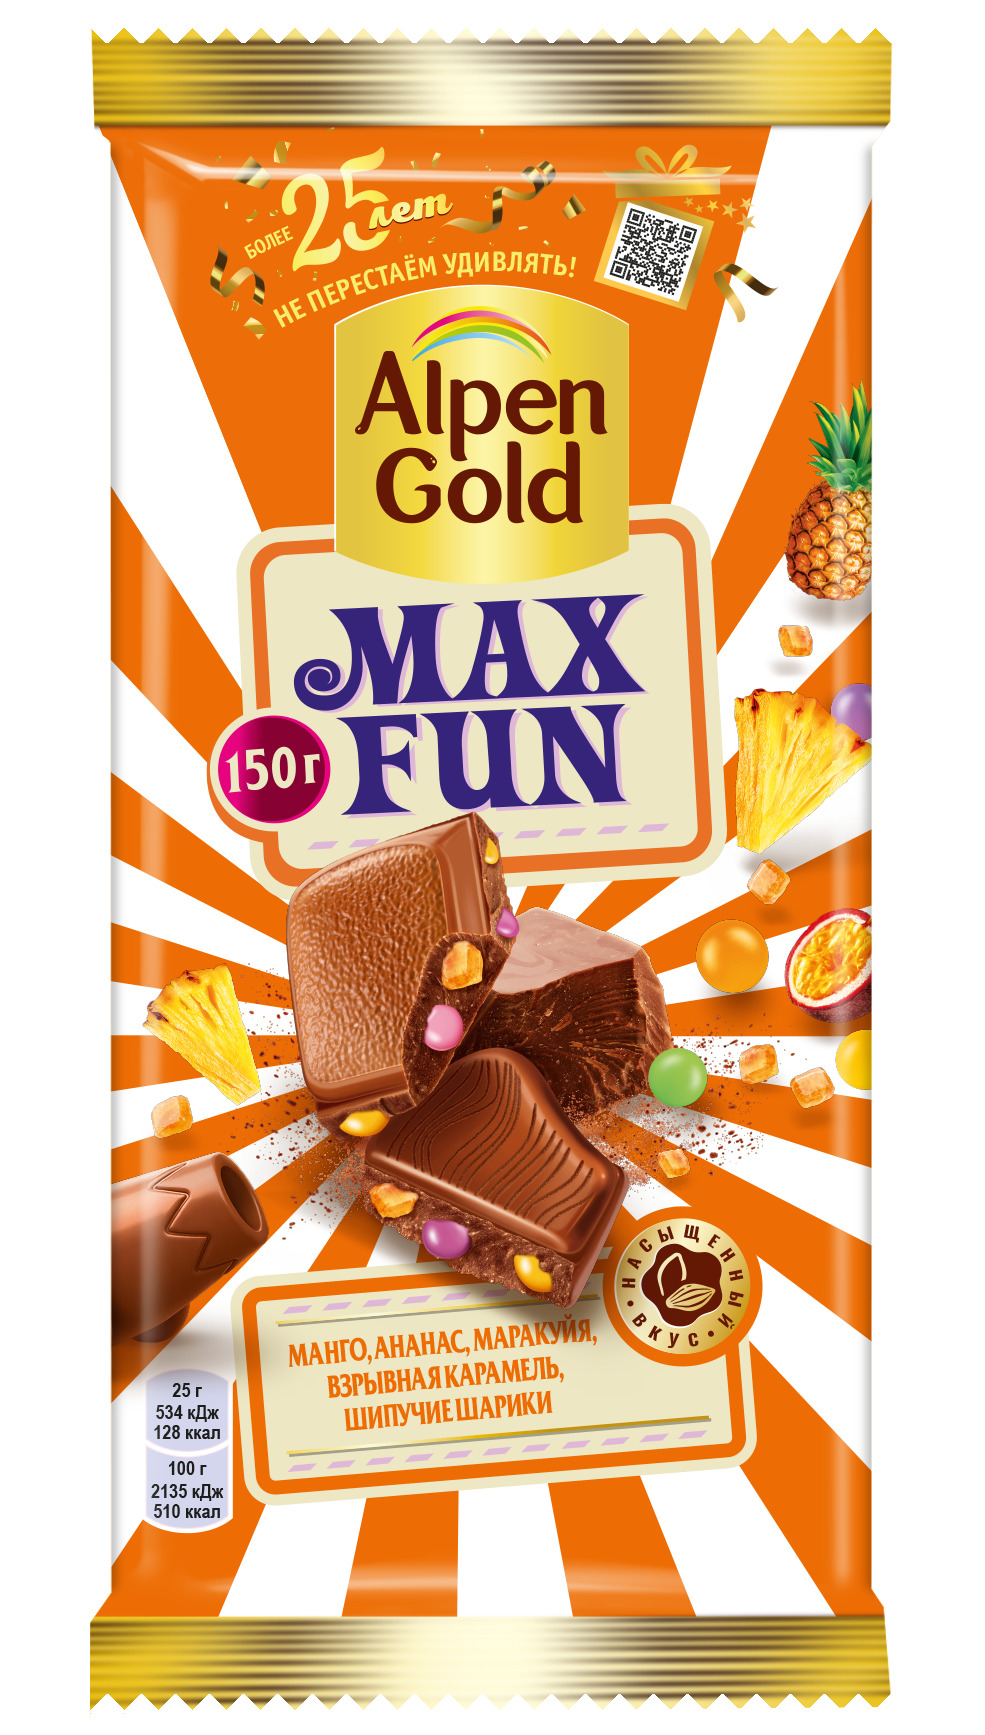 Шоколад Альпен Голд Max fun, взрывная карамель, 160 г